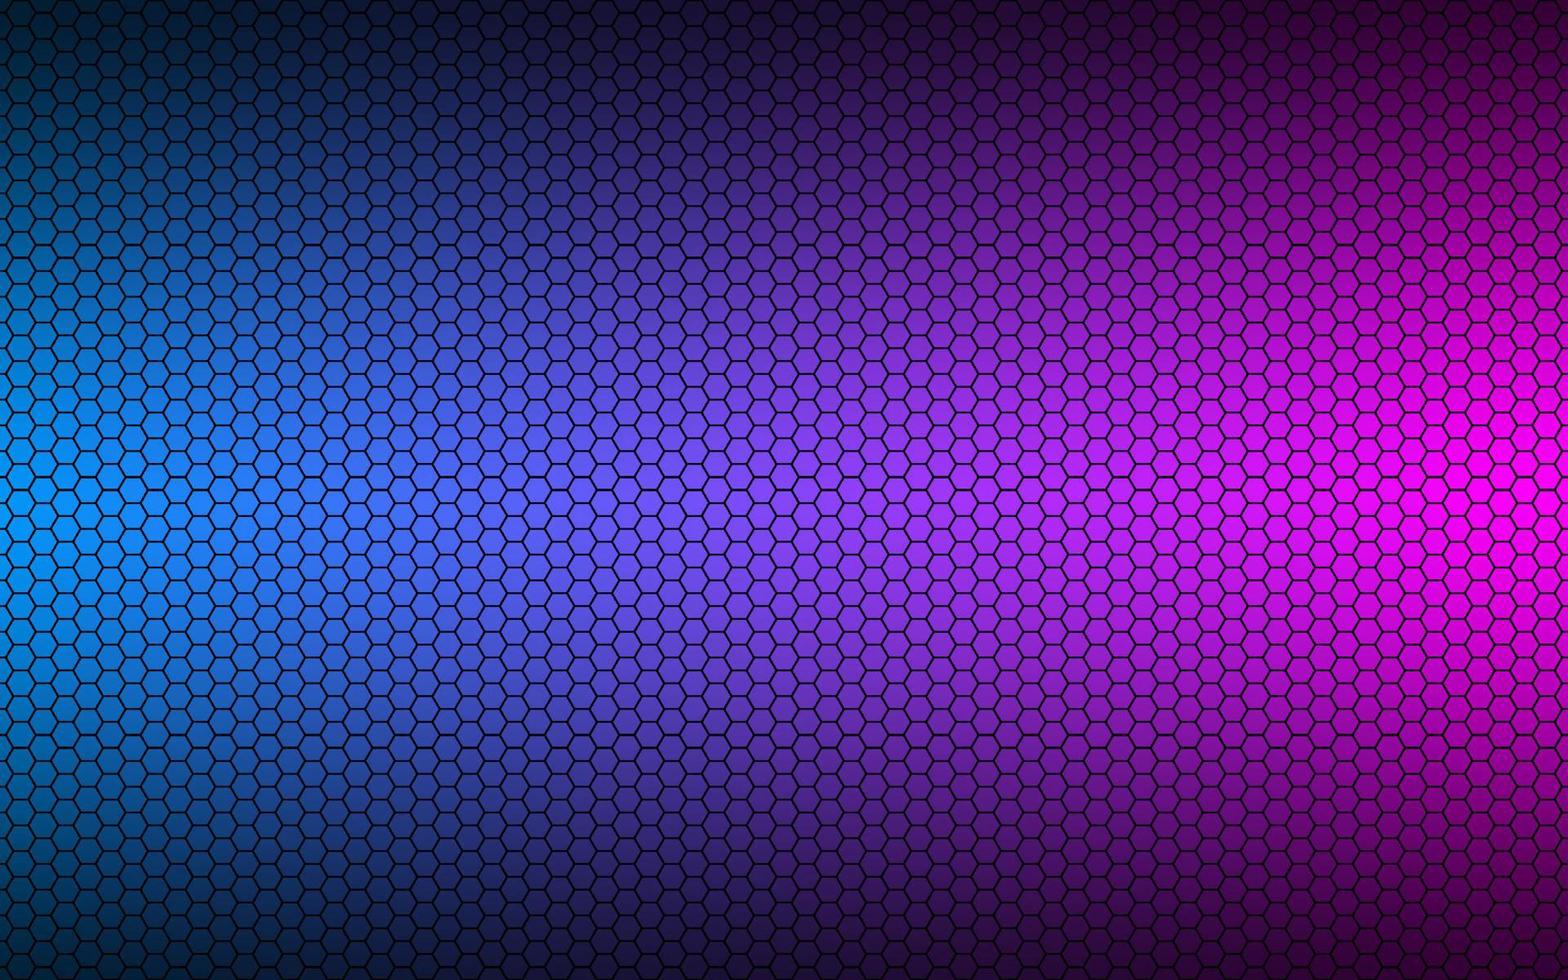 arrière-plan géométrique bleu et rose haute résolution moderne avec grille polygonale. motif hexagonal métallique noir abstrait. illustration vectorielle simple vecteur